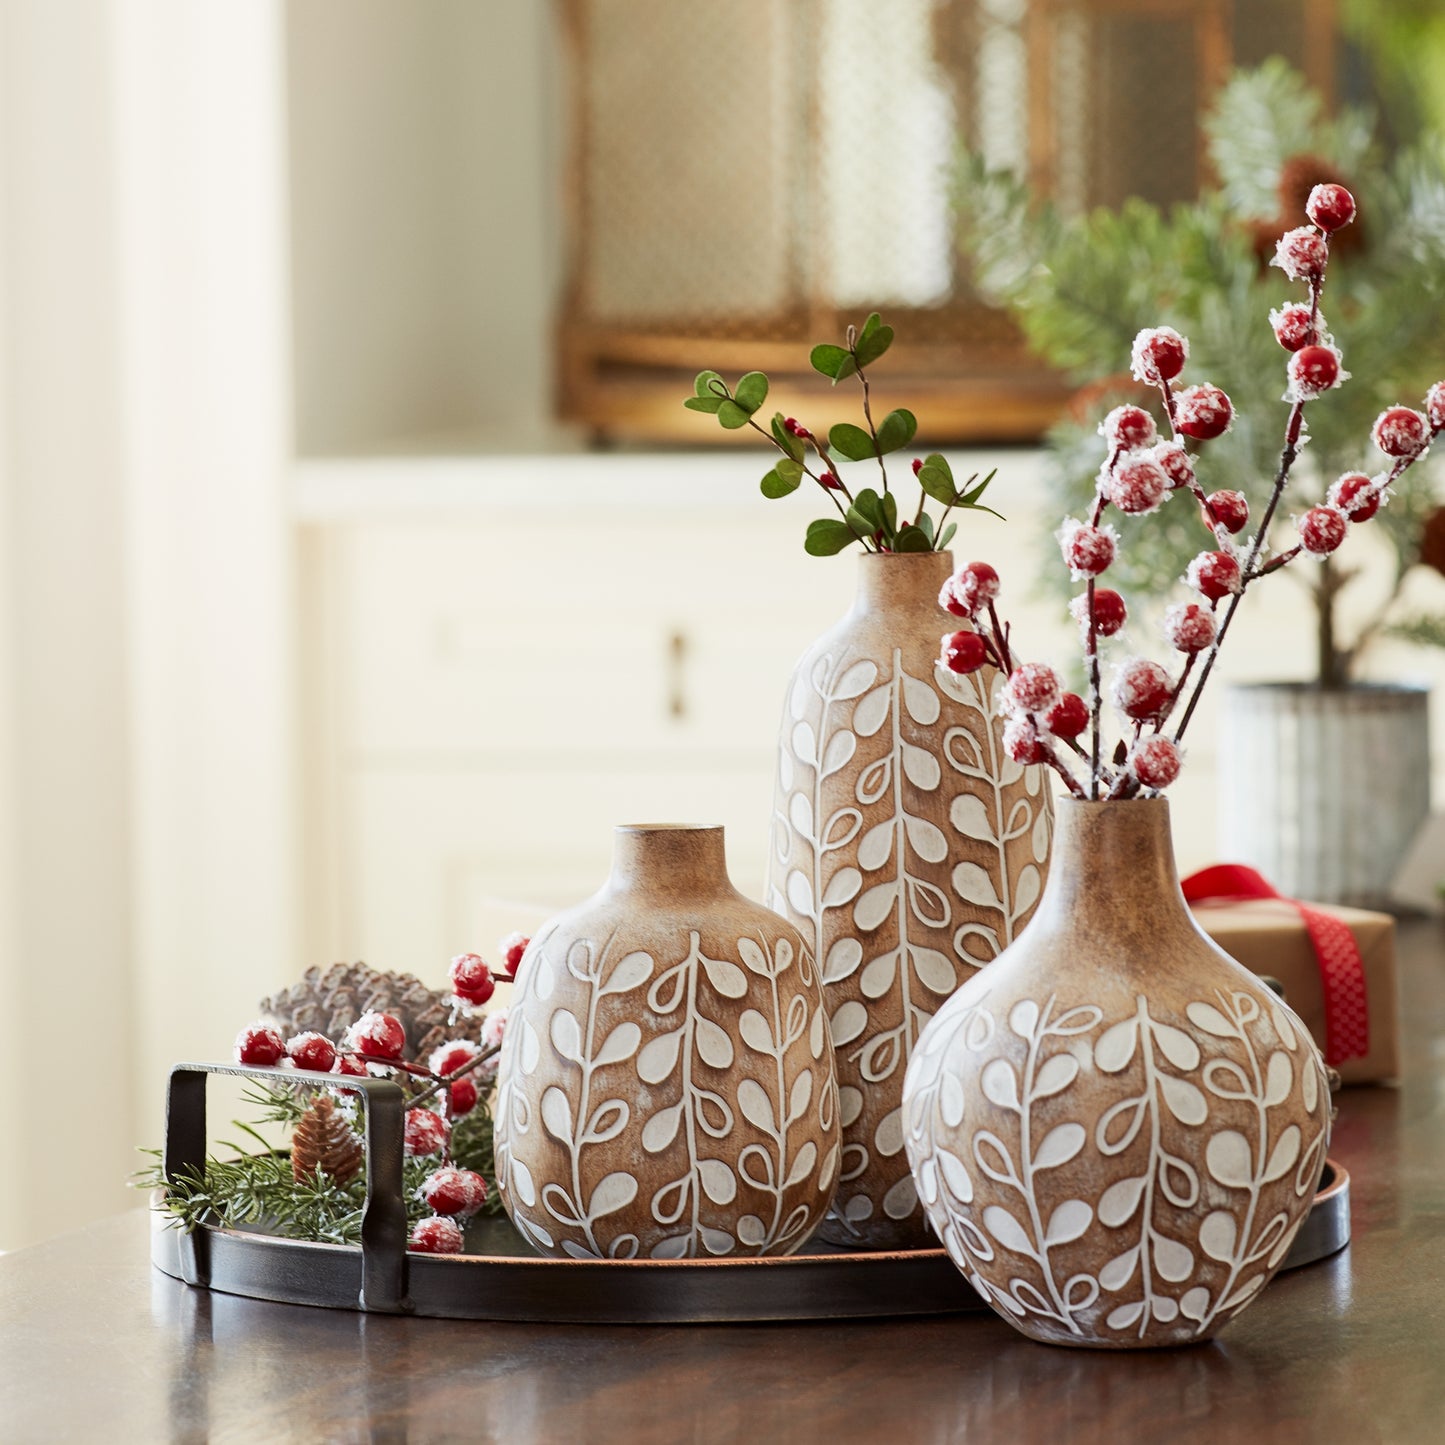 Carved Vases